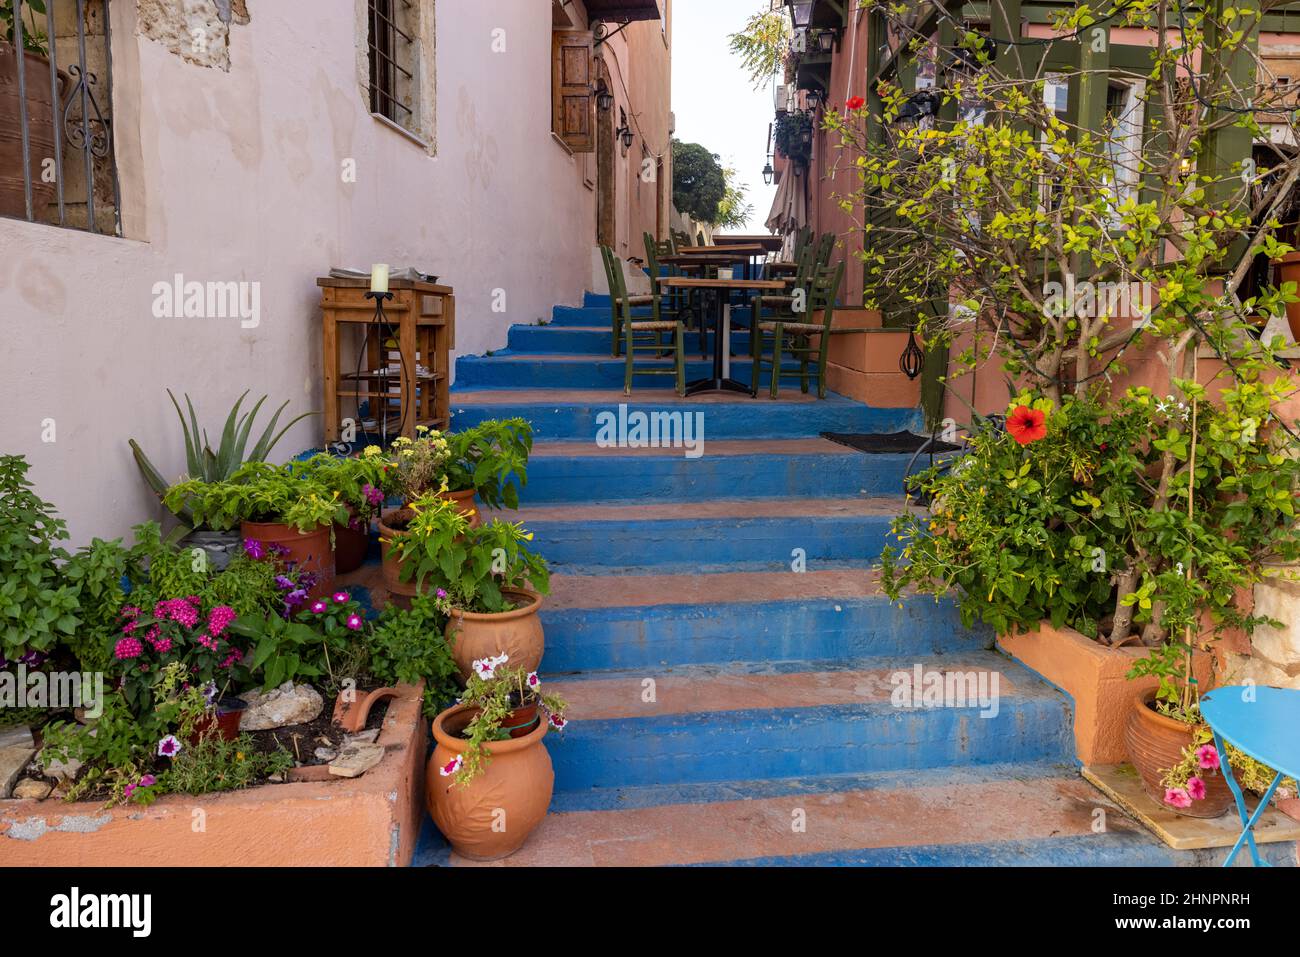 Piccola strada stretta con scale blu nel centro storico di Rethymnon, isola di Creta, Grecia Foto Stock